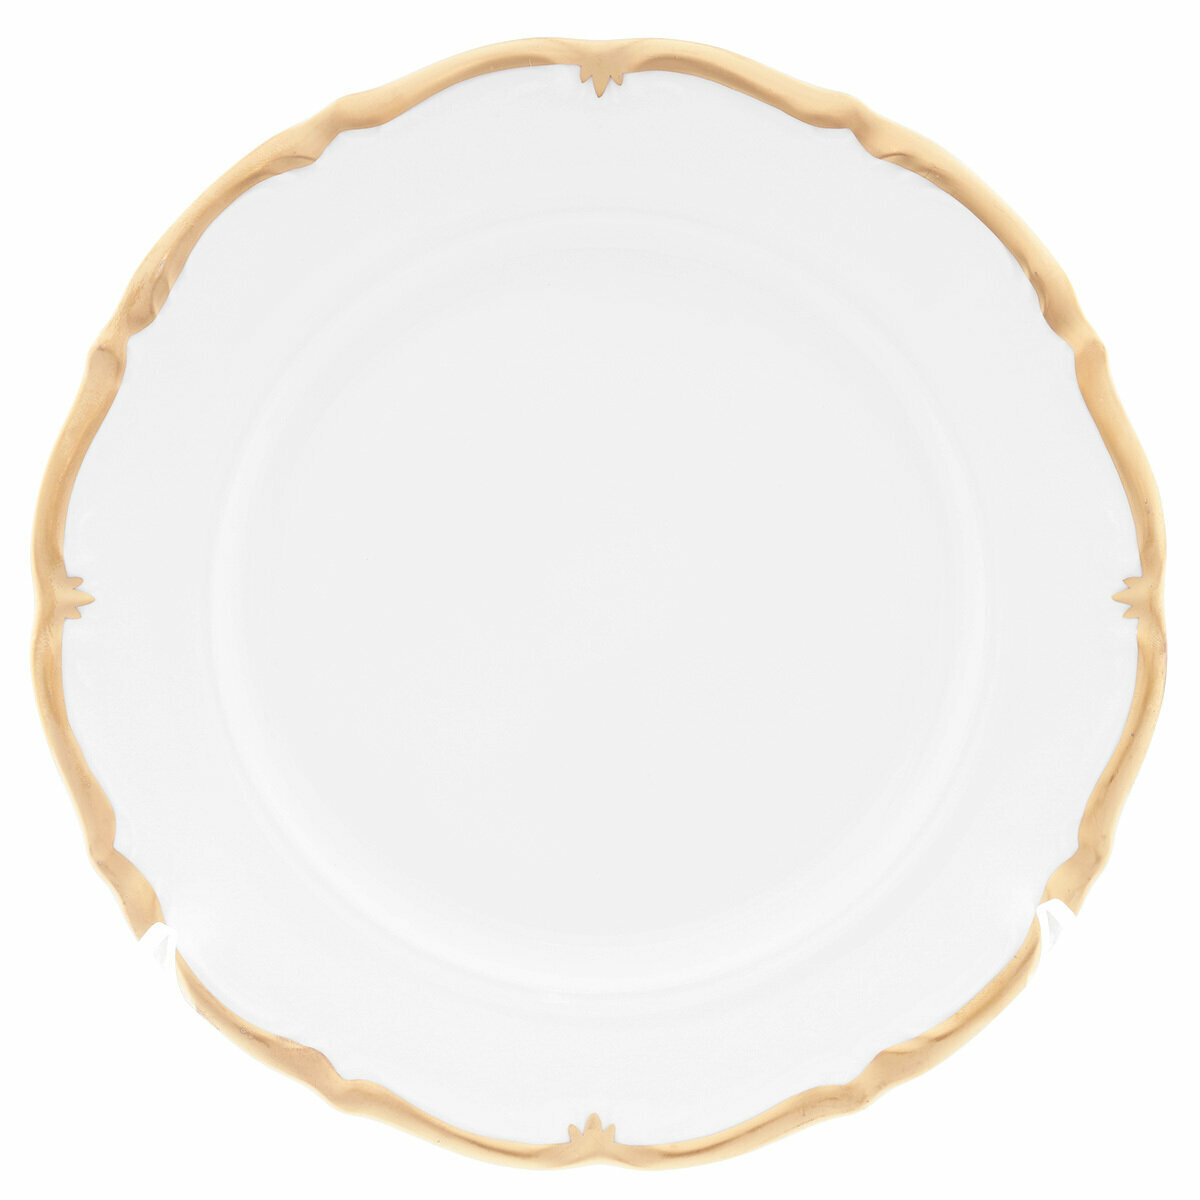 Набор тарелок Queen's Crown Prestige 21 см (6 шт)